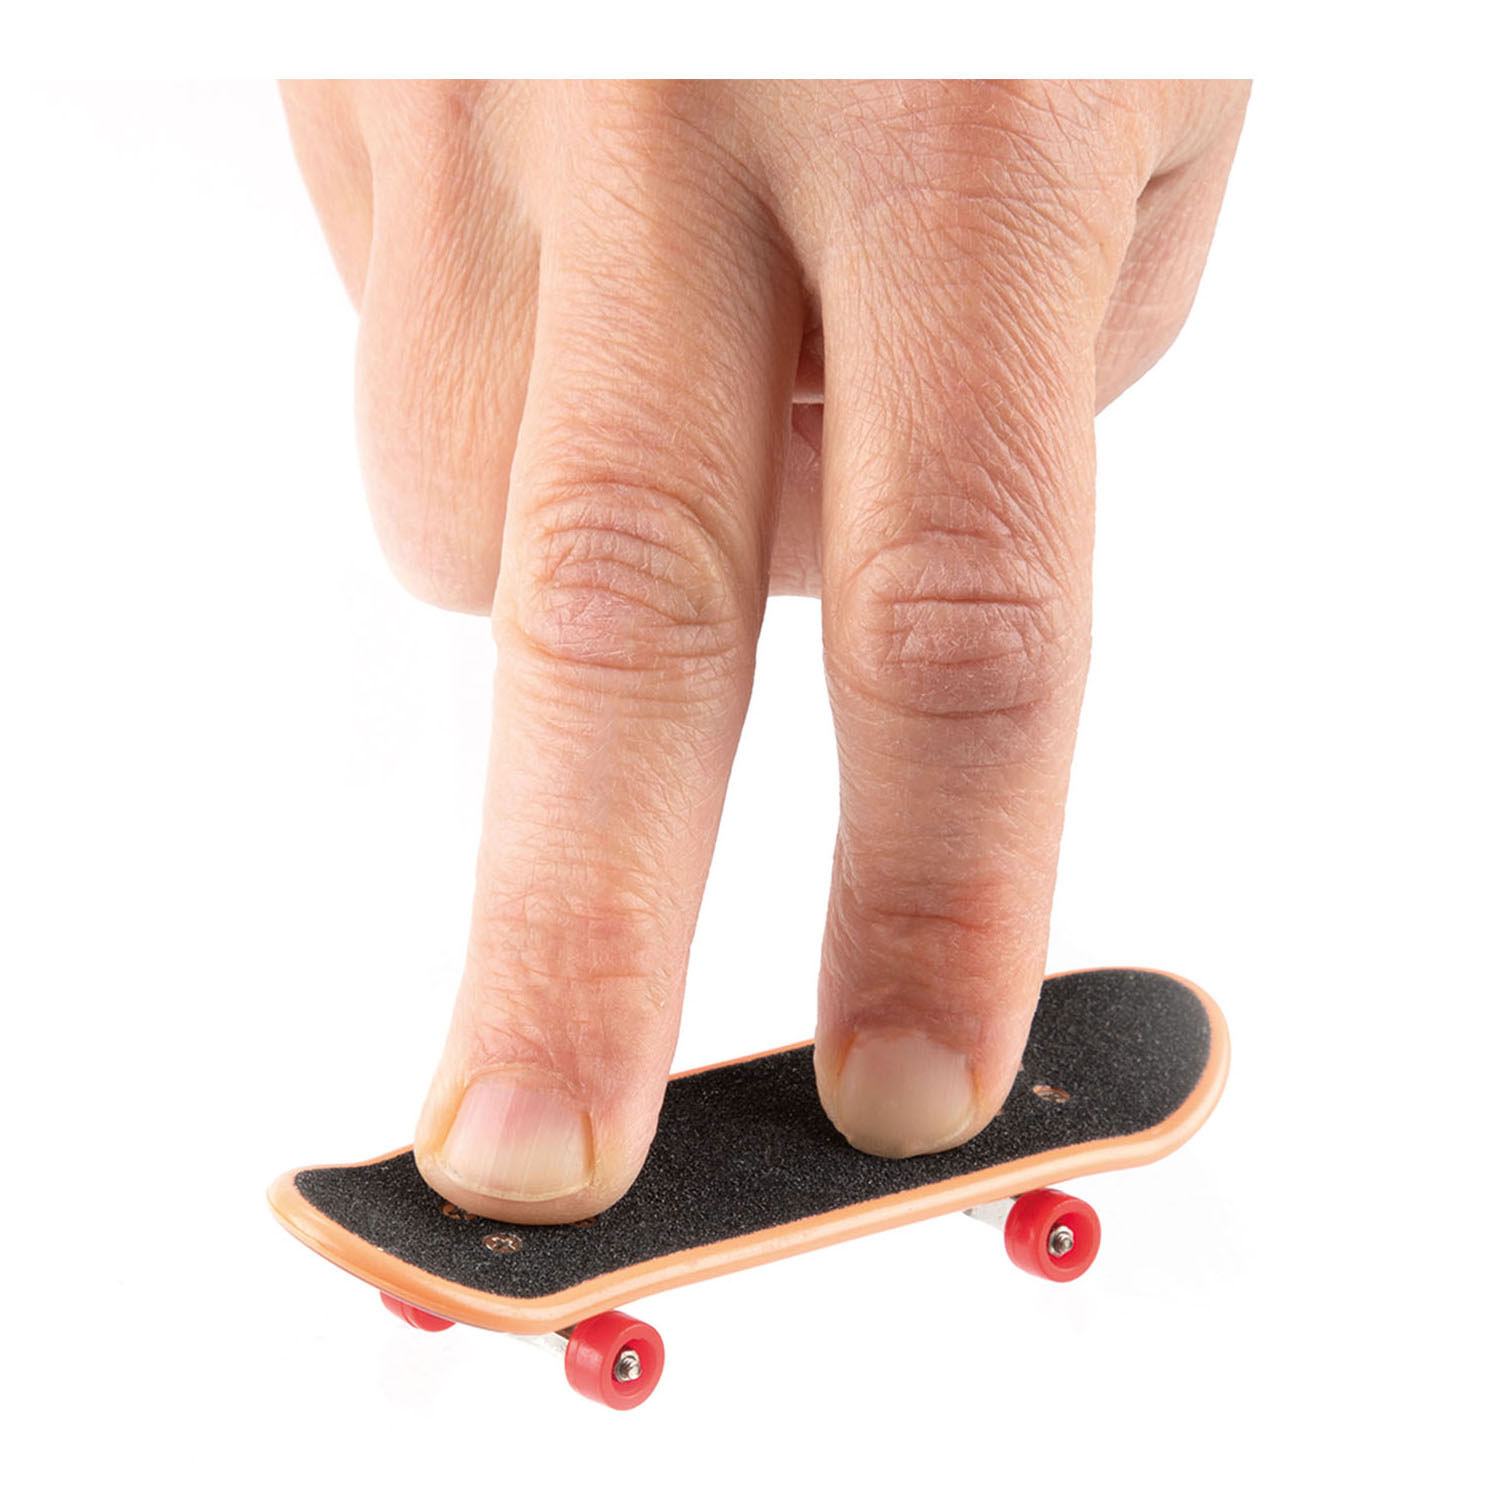 Skate-Finger-Skateboard mit zusätzlichen Rollen